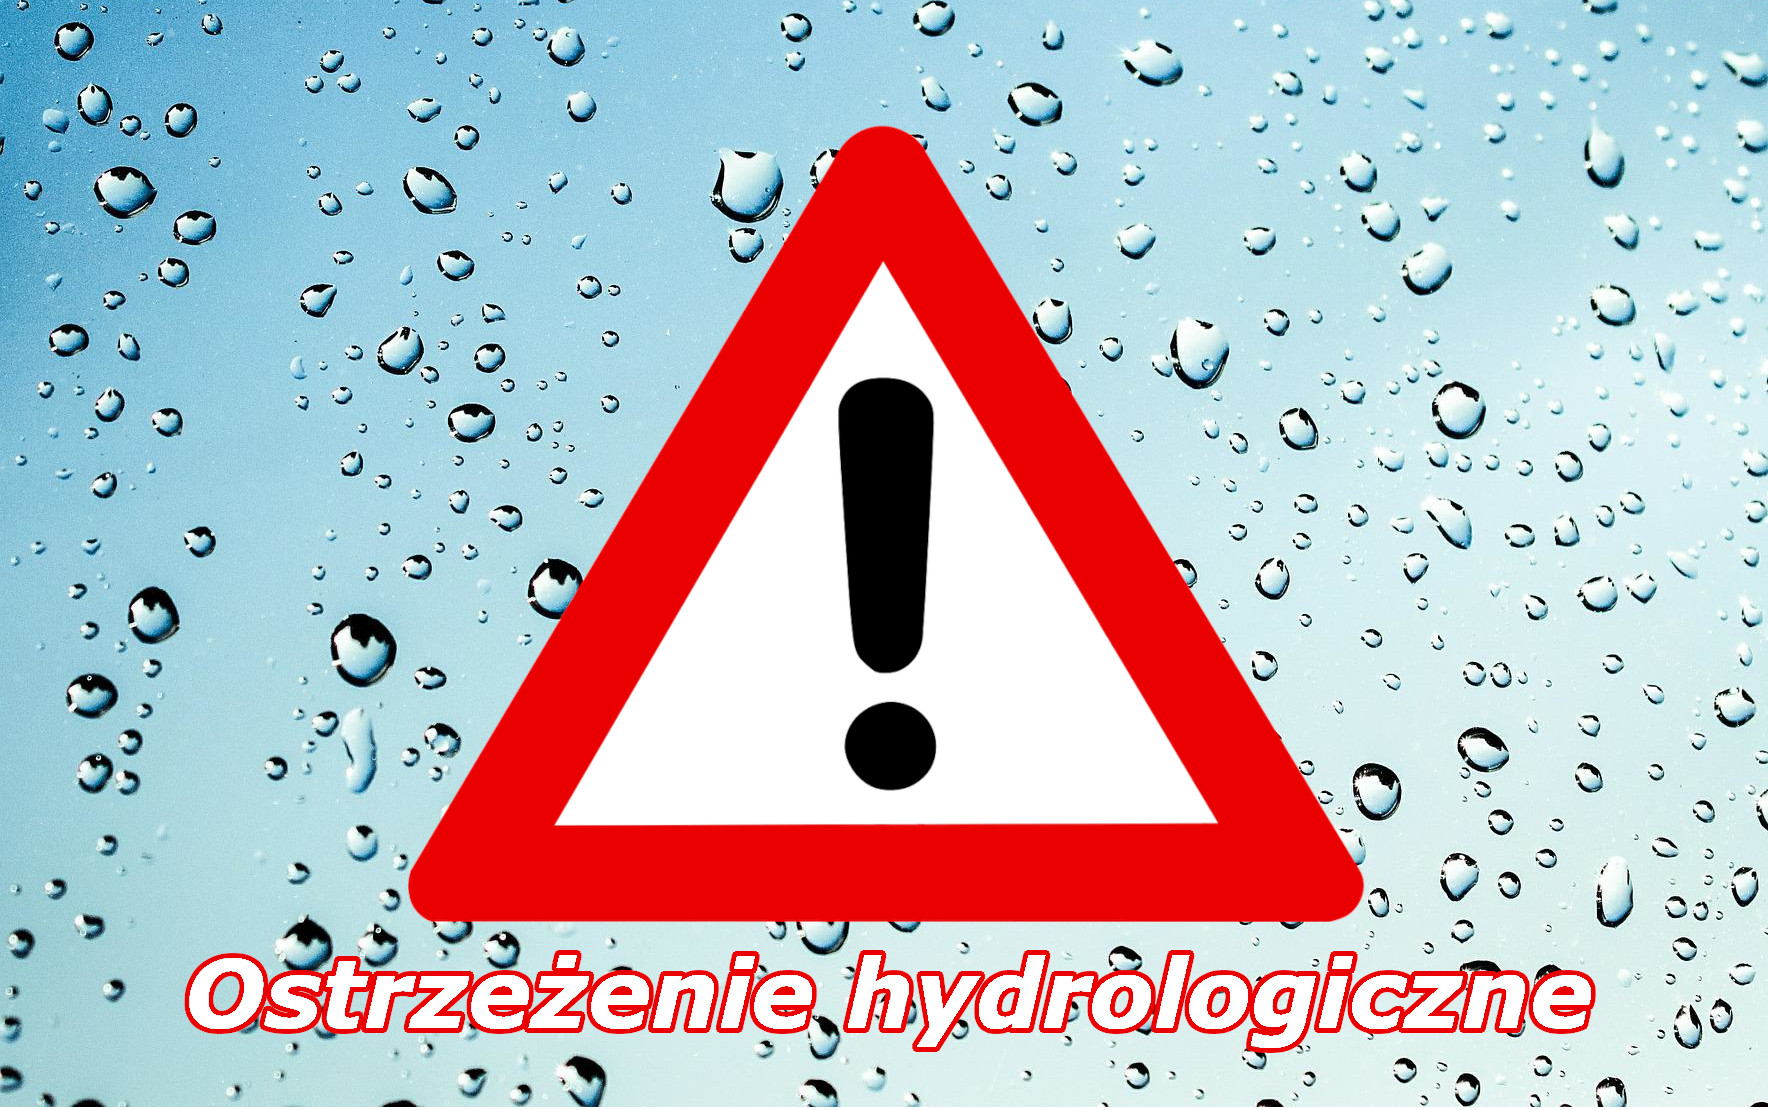 Zmiana ostrzeżenia hydrologicznego nr 221